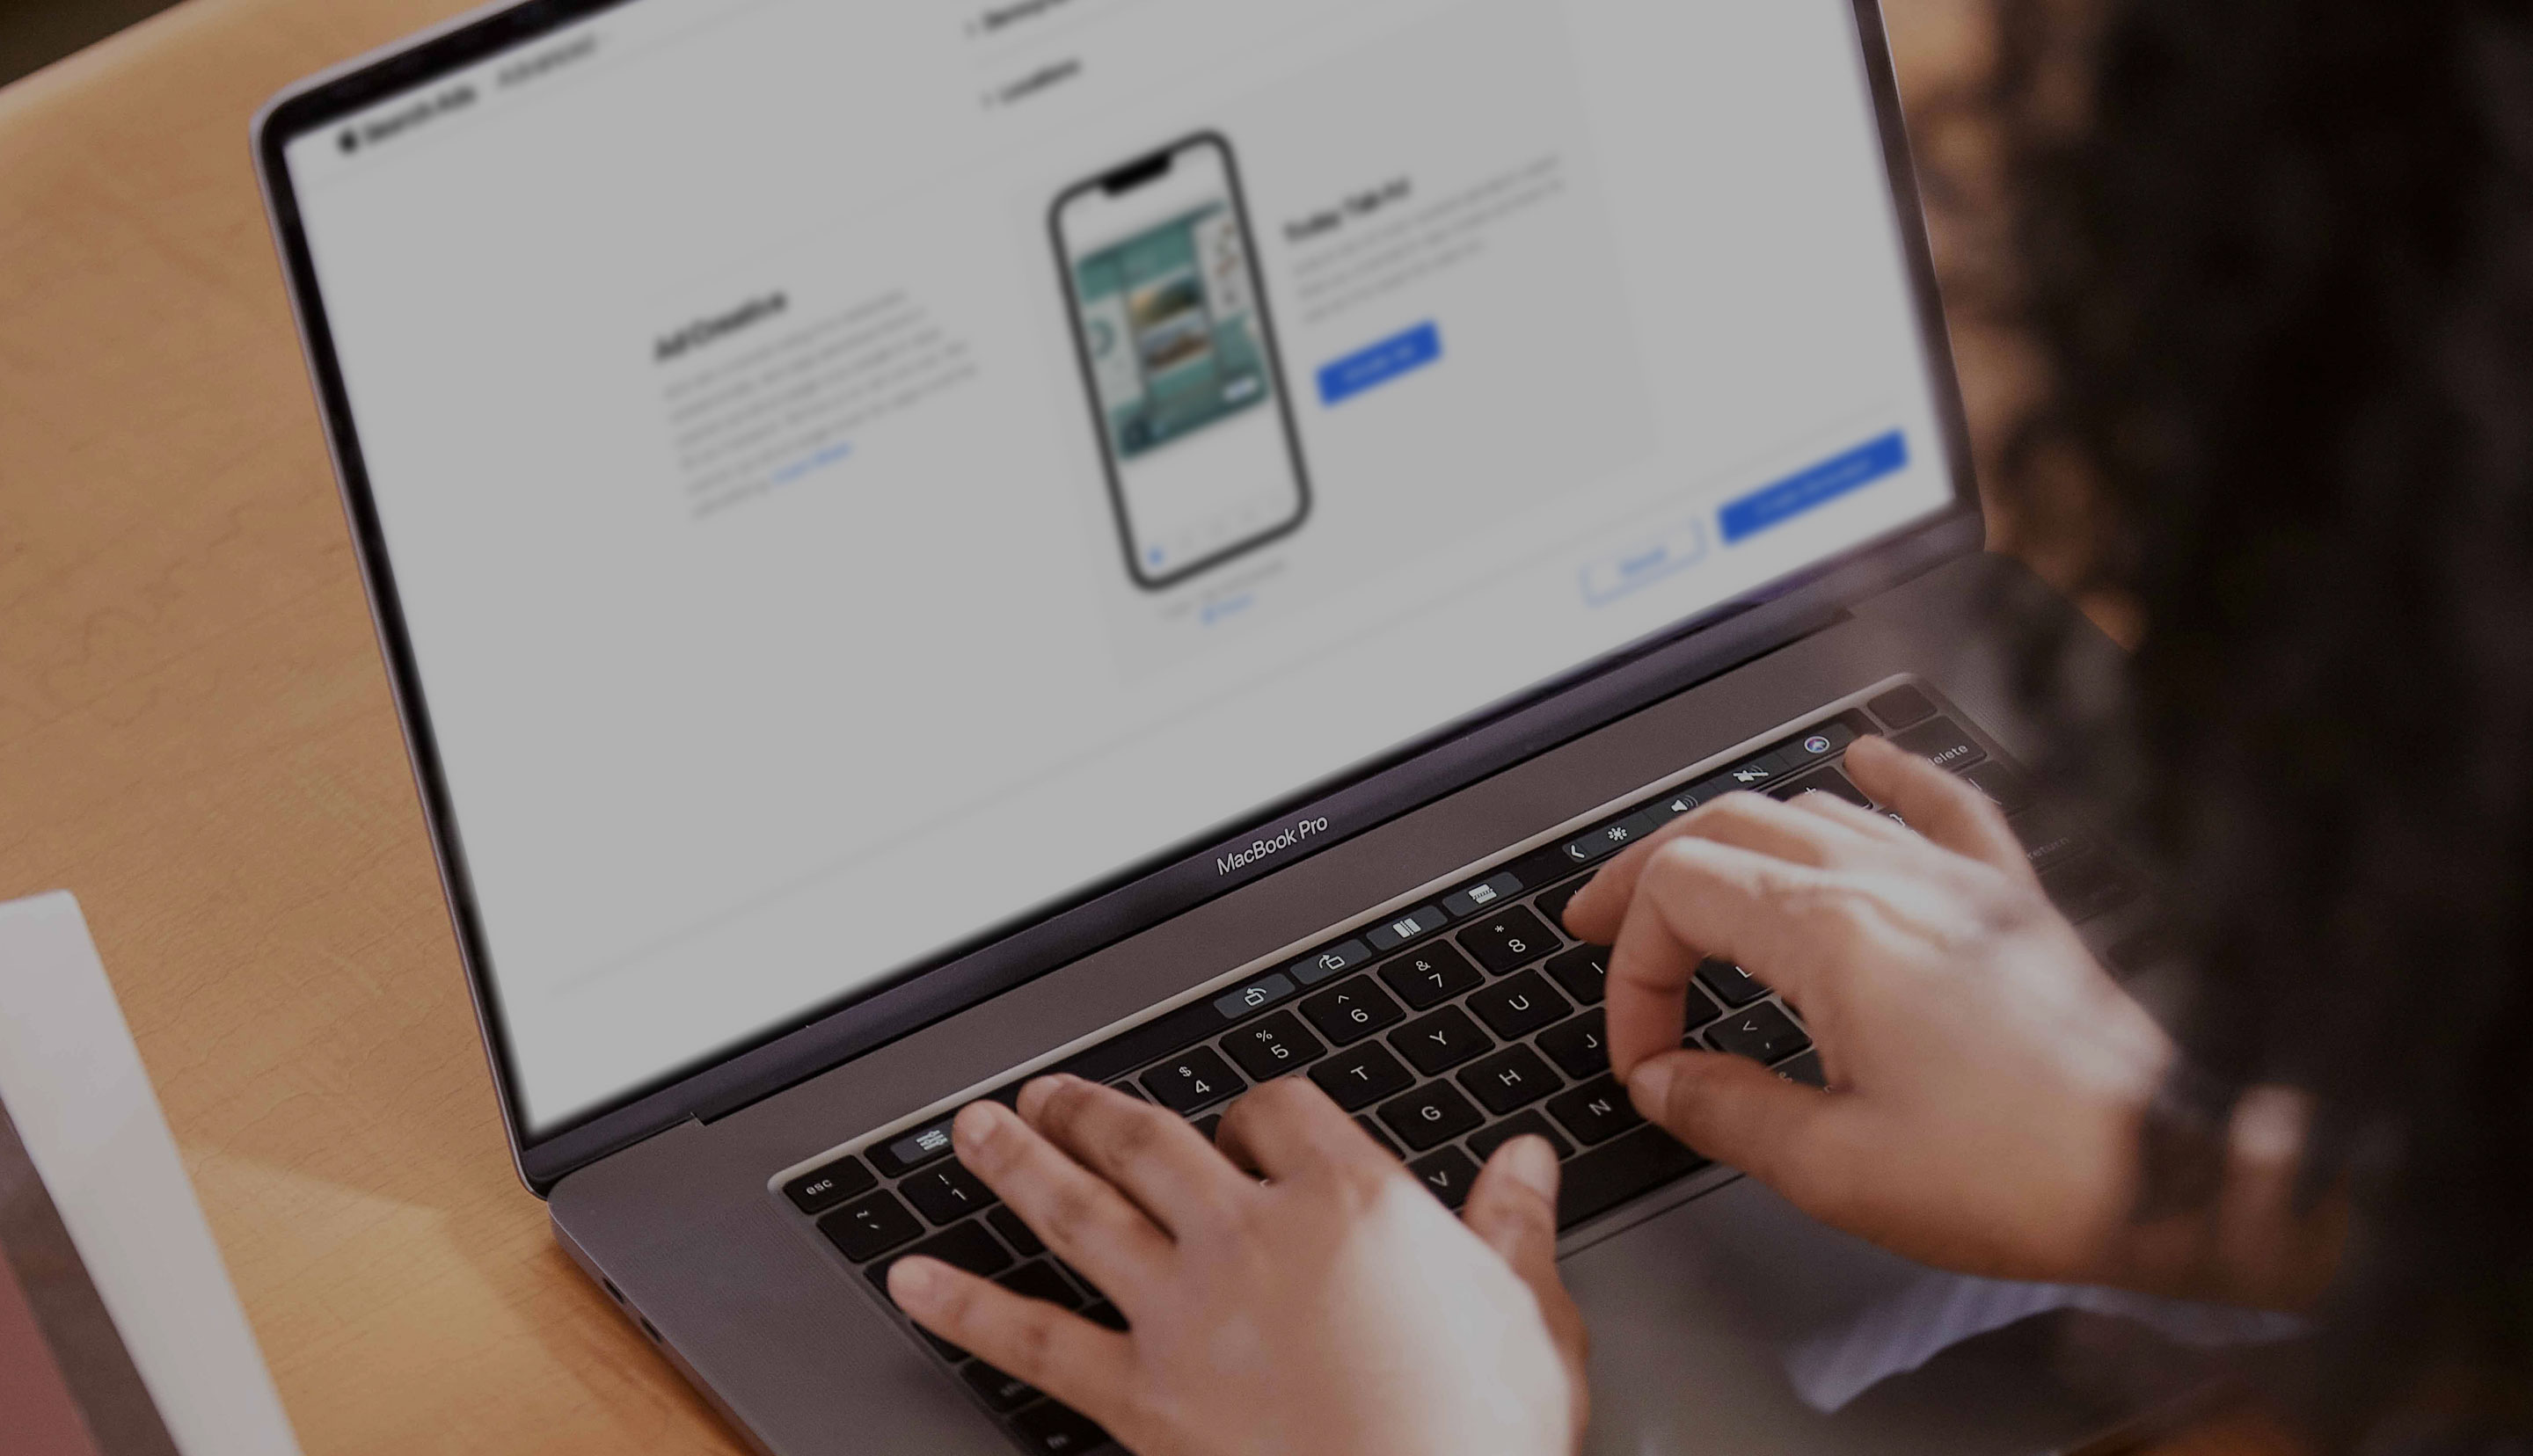 MacBookのキーボードで入力を行っている両手のクローズアップ。スクリーンに、Todayタブキャンペーンを作成するためのApple Search Adsキャンペーン作成画面が表示されている。